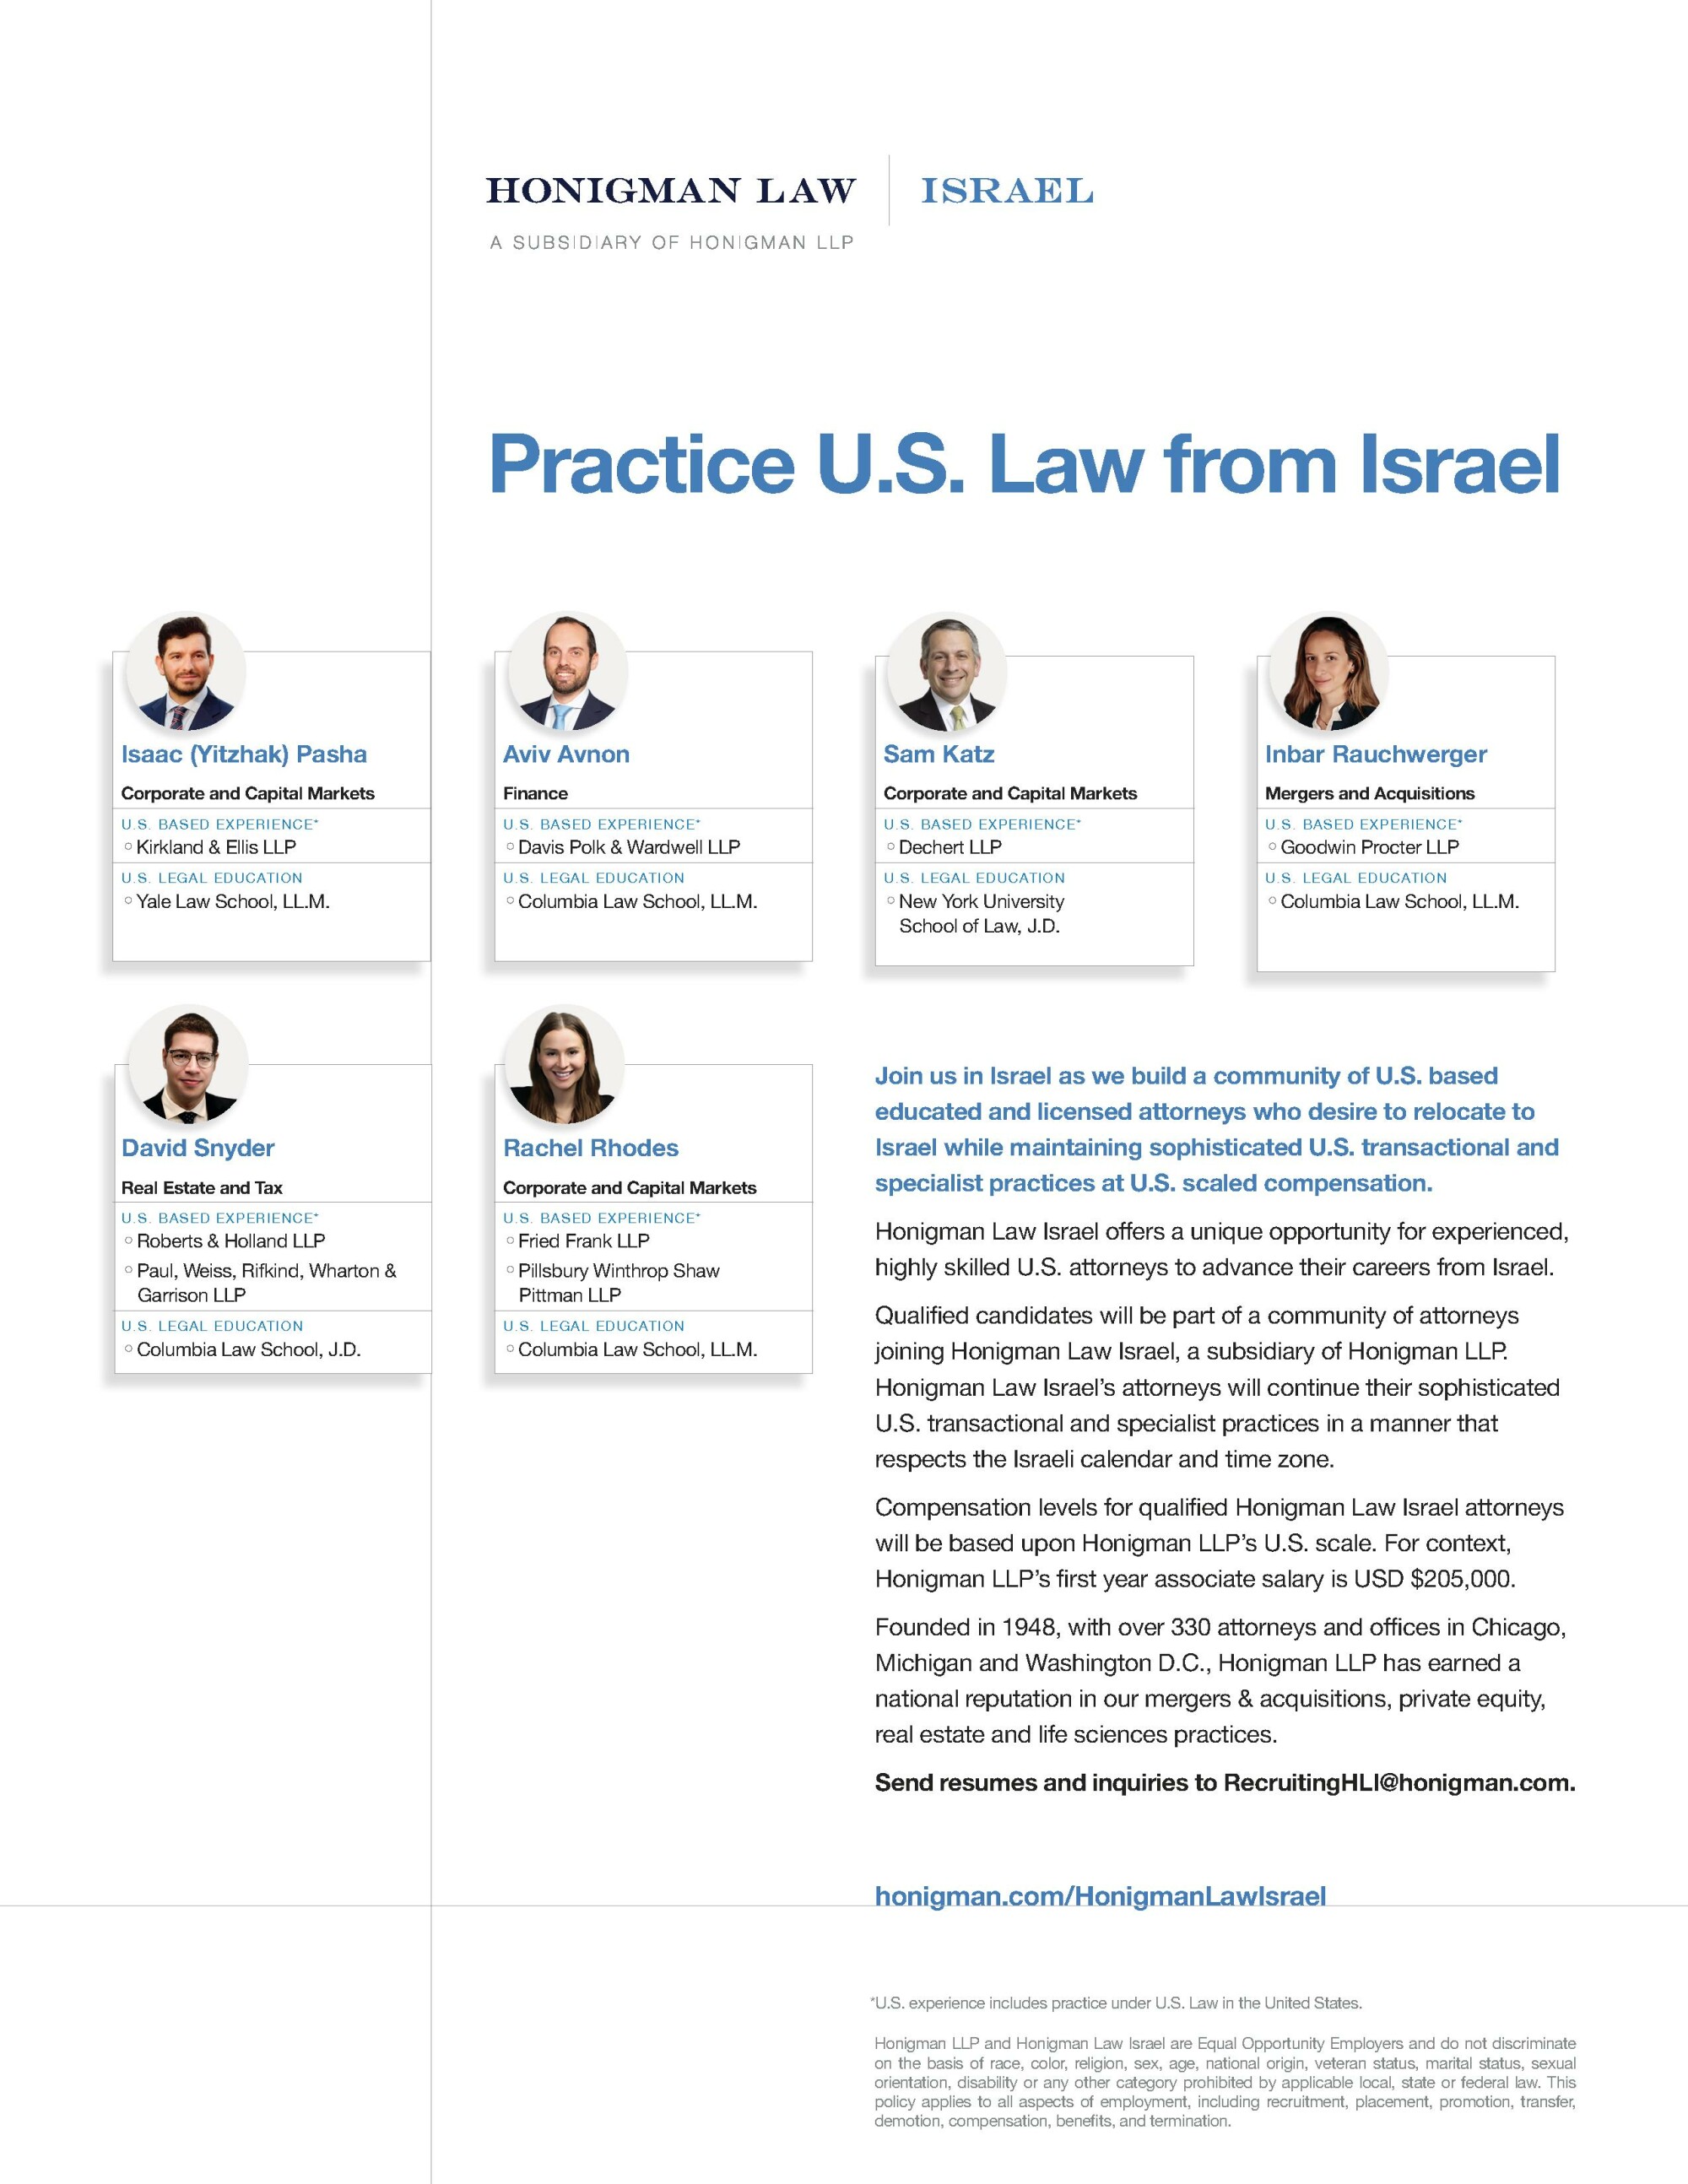 Honigman Law Israel